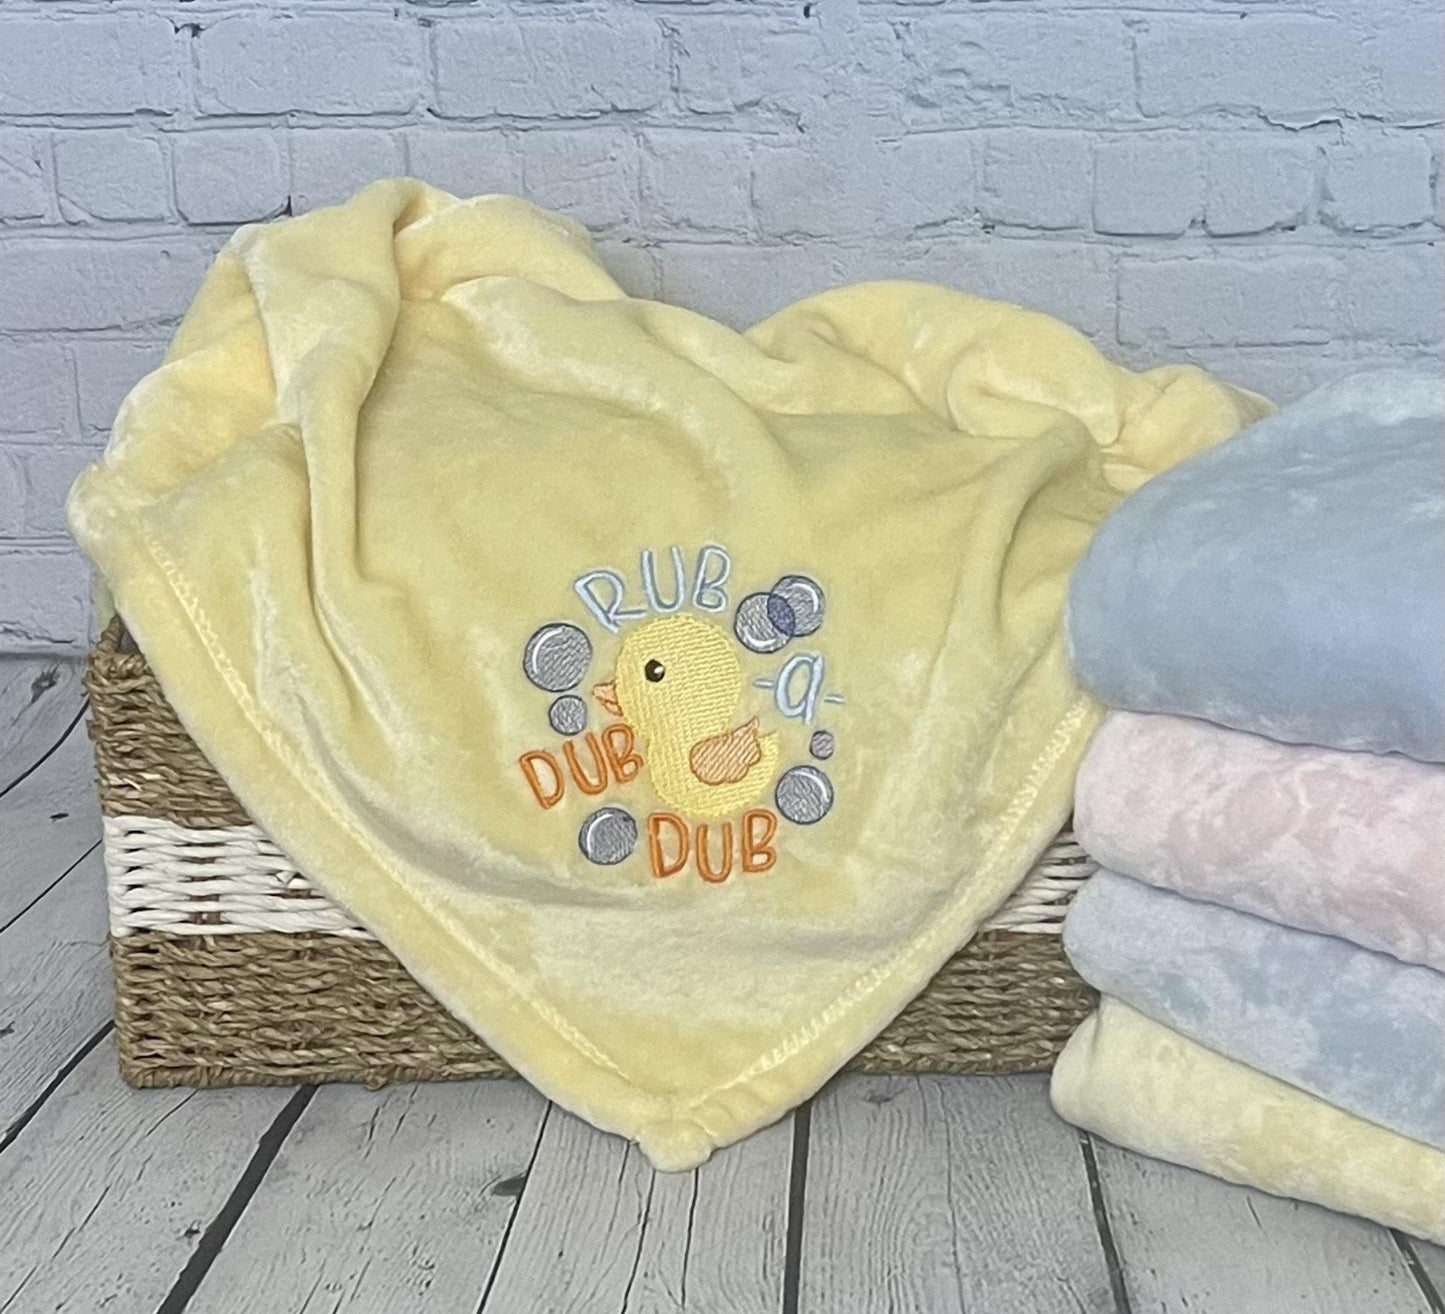 Rub A Dub Dub nursery rhyme baby blanket